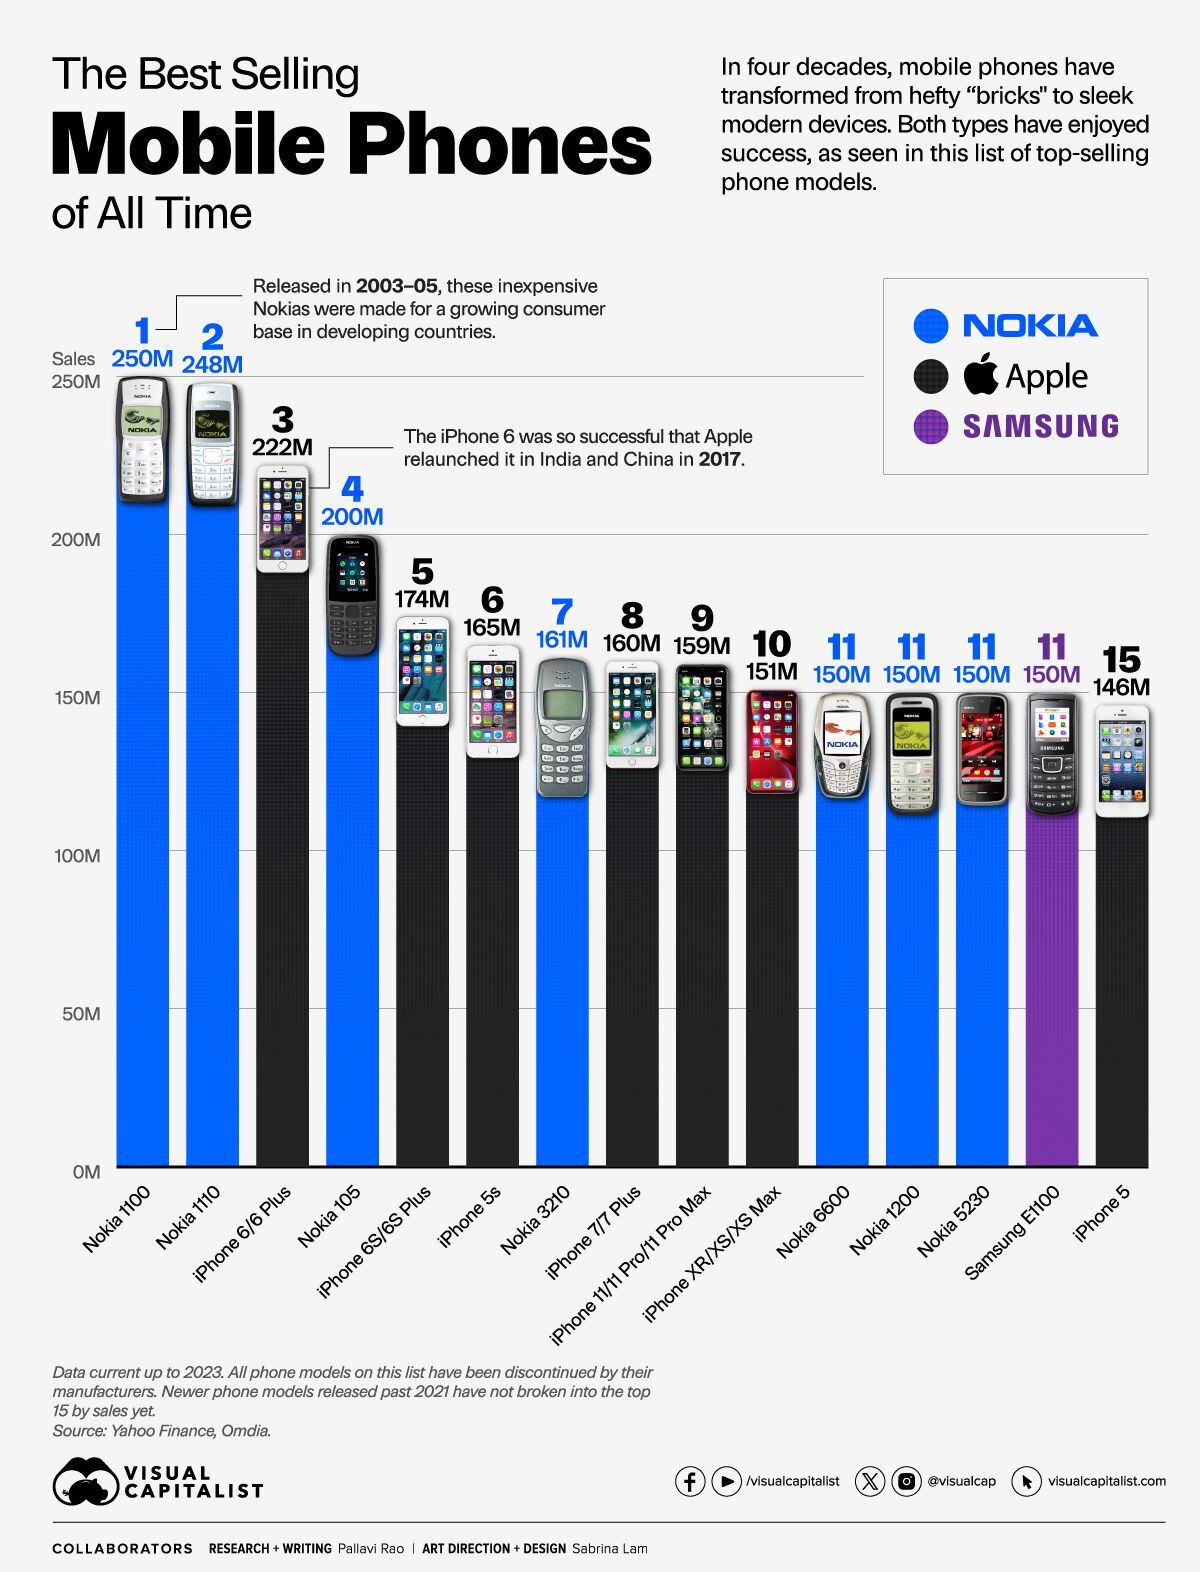 android, los teléfonos celulares más vendidos de toda la historia: nokia. apple y samsung son los amos